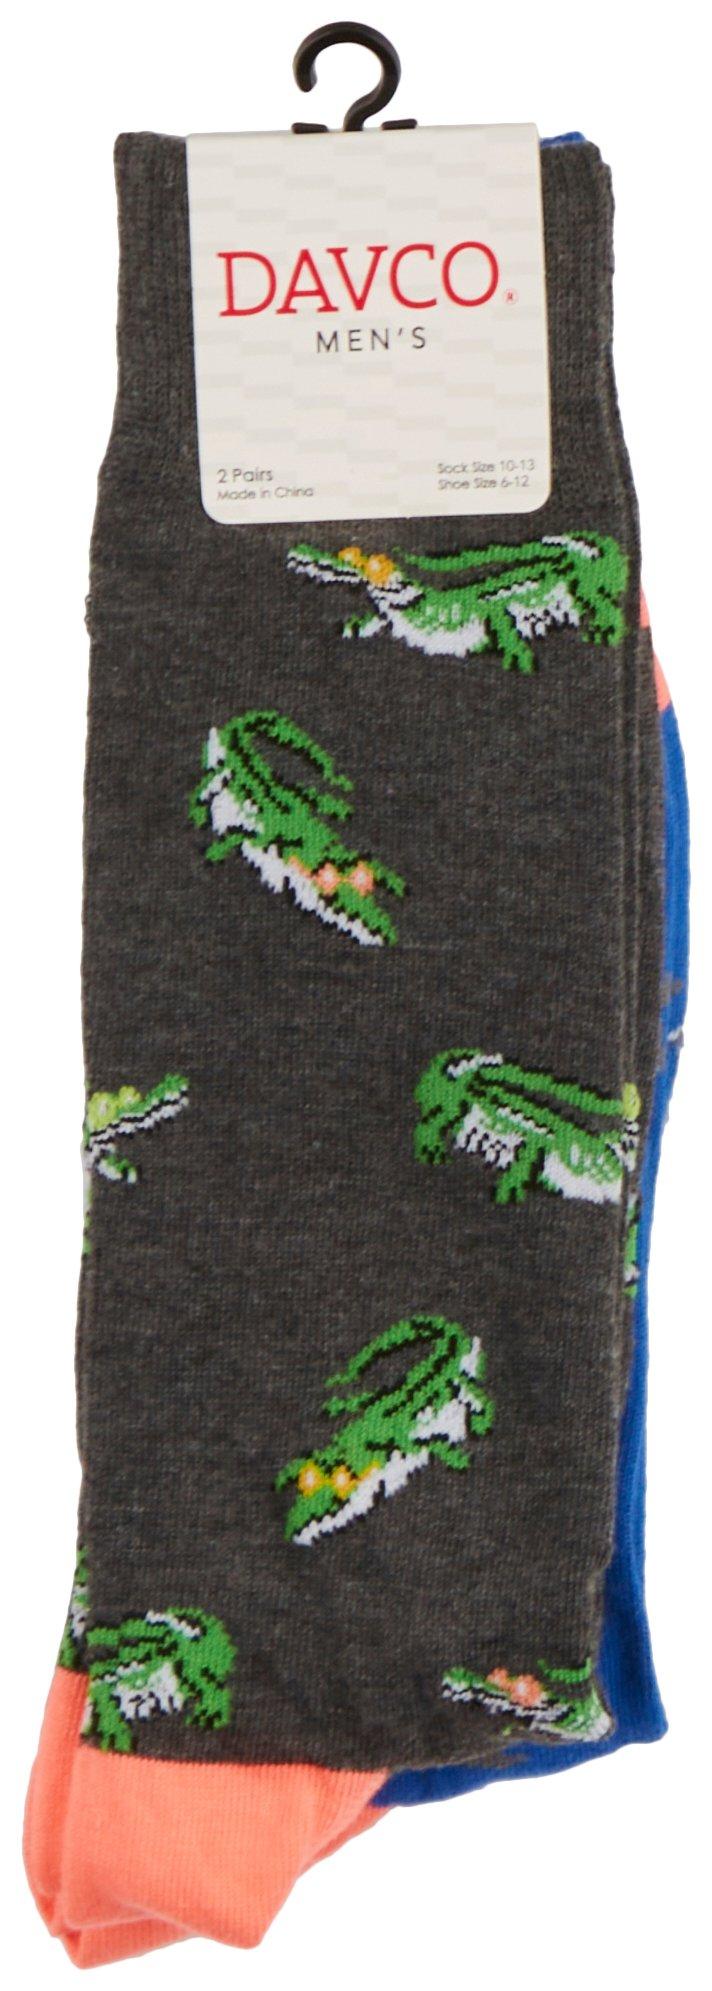 Davco Mens 2-Pr. Alligator/Shark Mid-Calf Socks